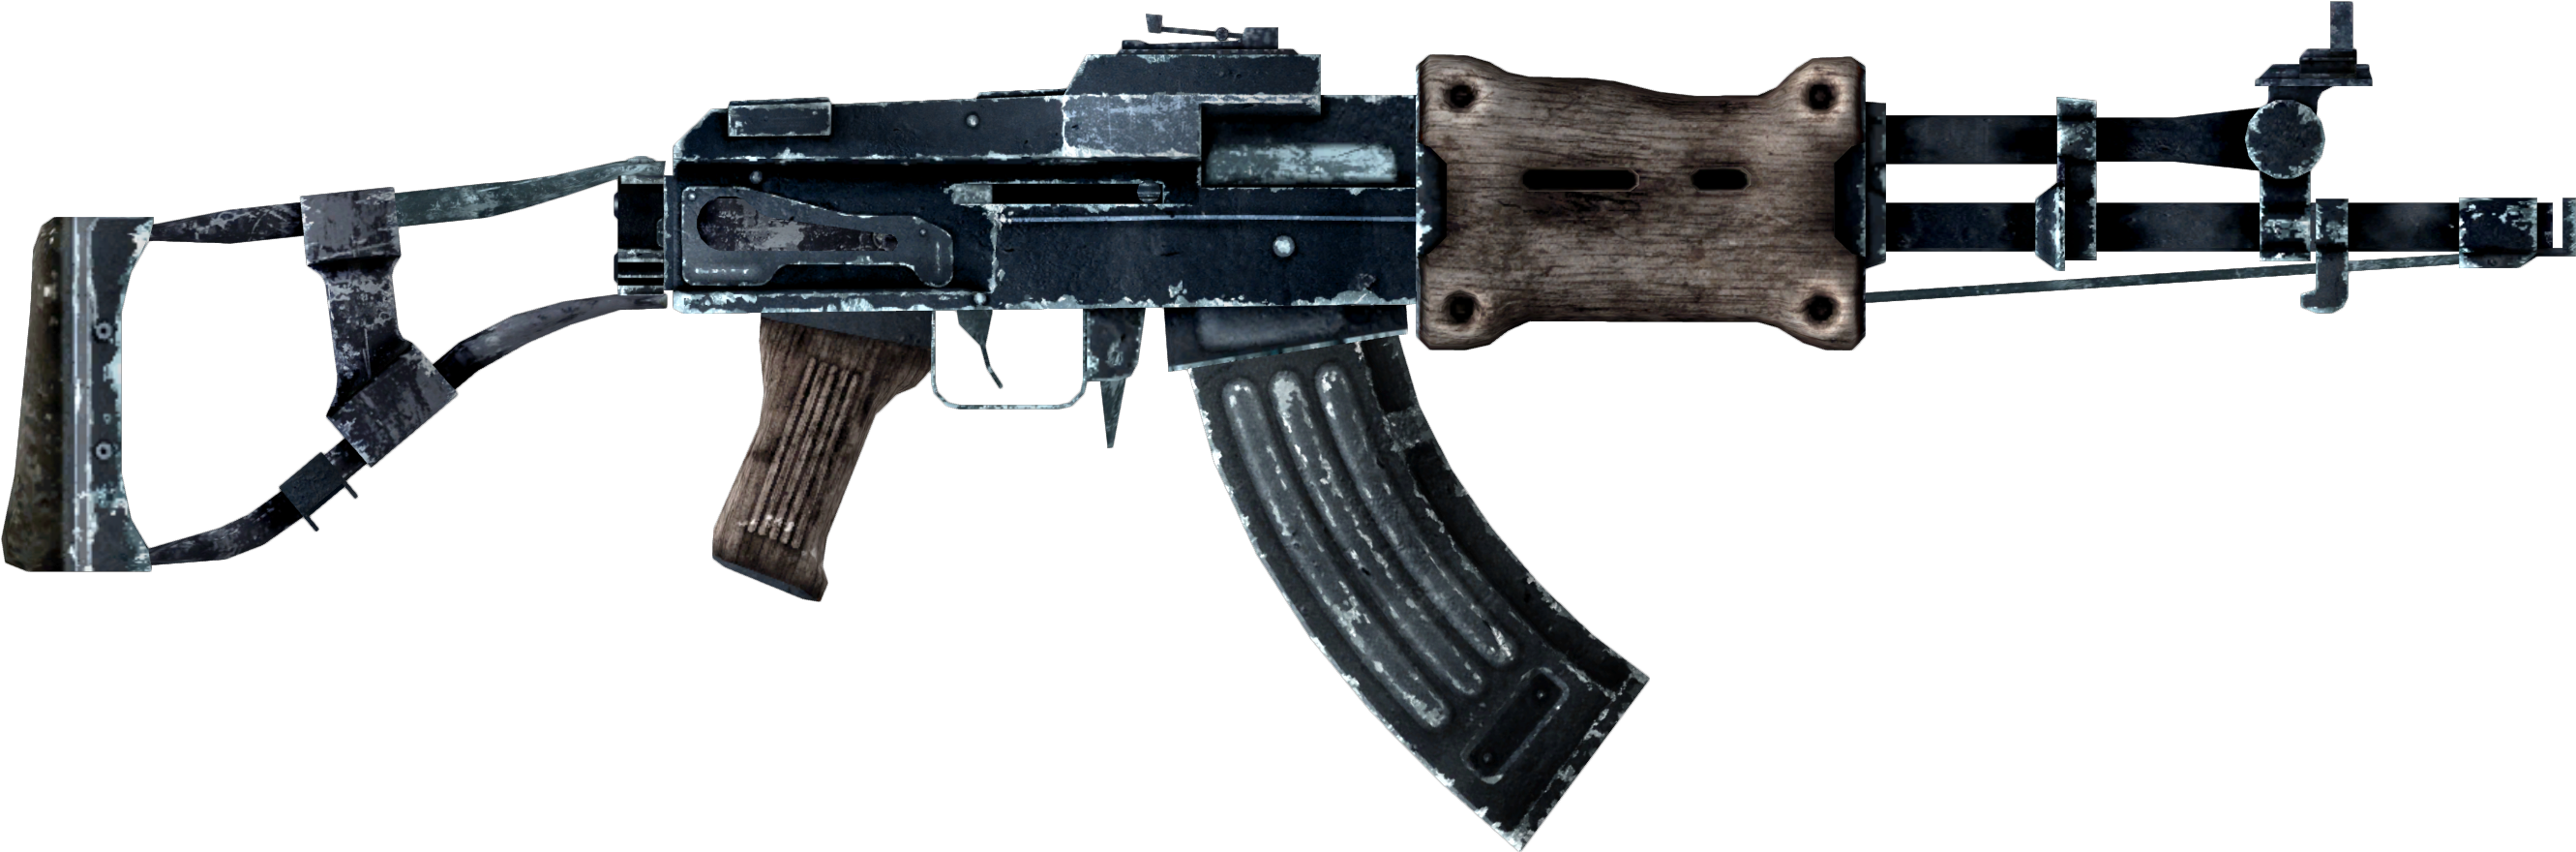 Perk Effects - Fallout 4 Handmade Rifle (2750x950)